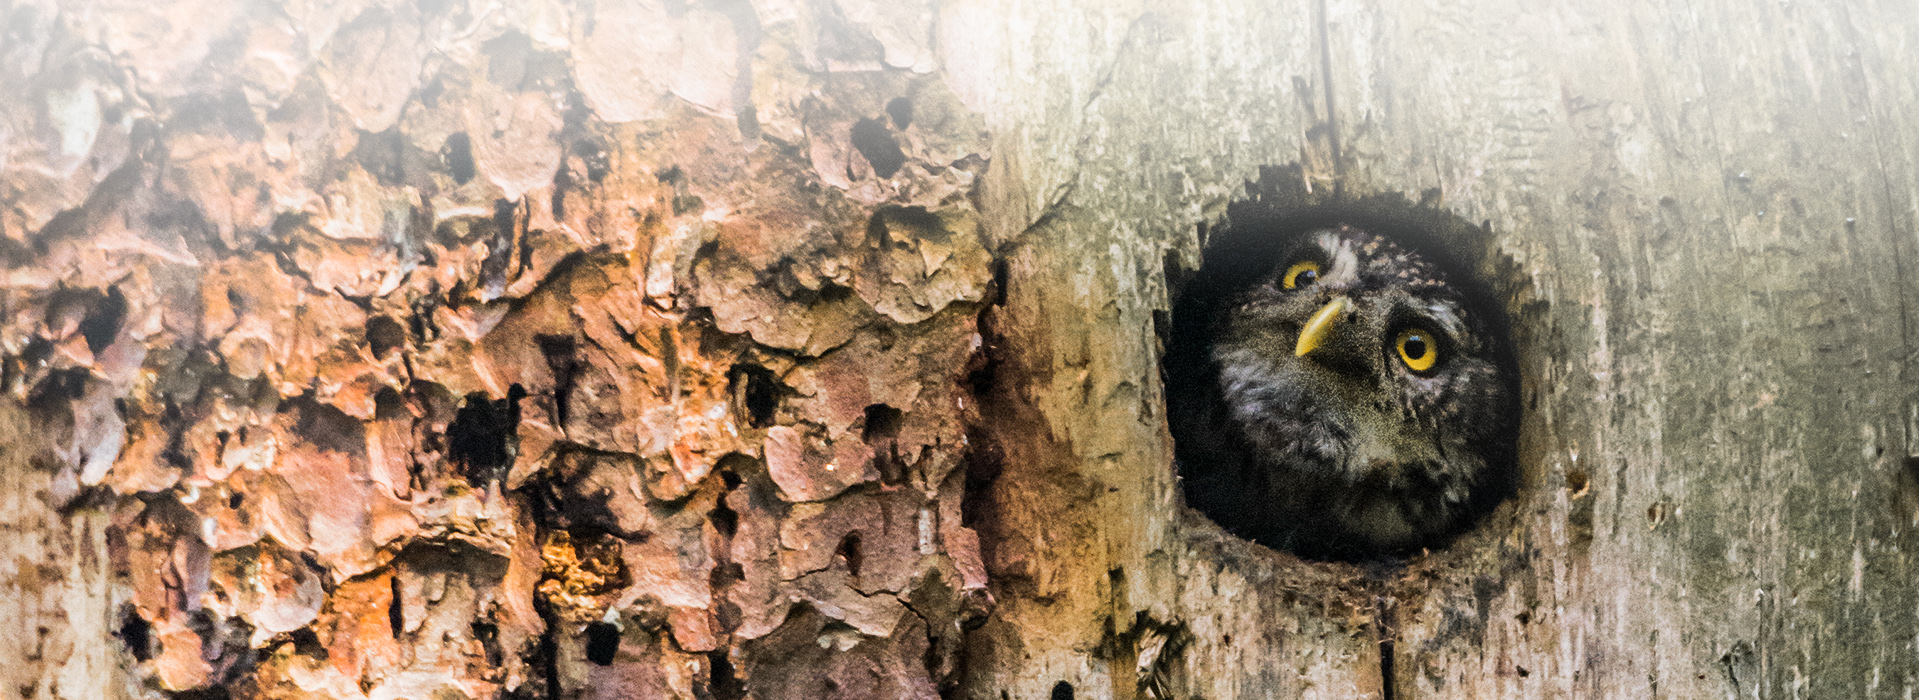 Aus einer Baumhöhle blickt ein Sperlingskauz herraus. Auffallend sind der  gelbe Schnabel und die leuchtend gelben Augen.